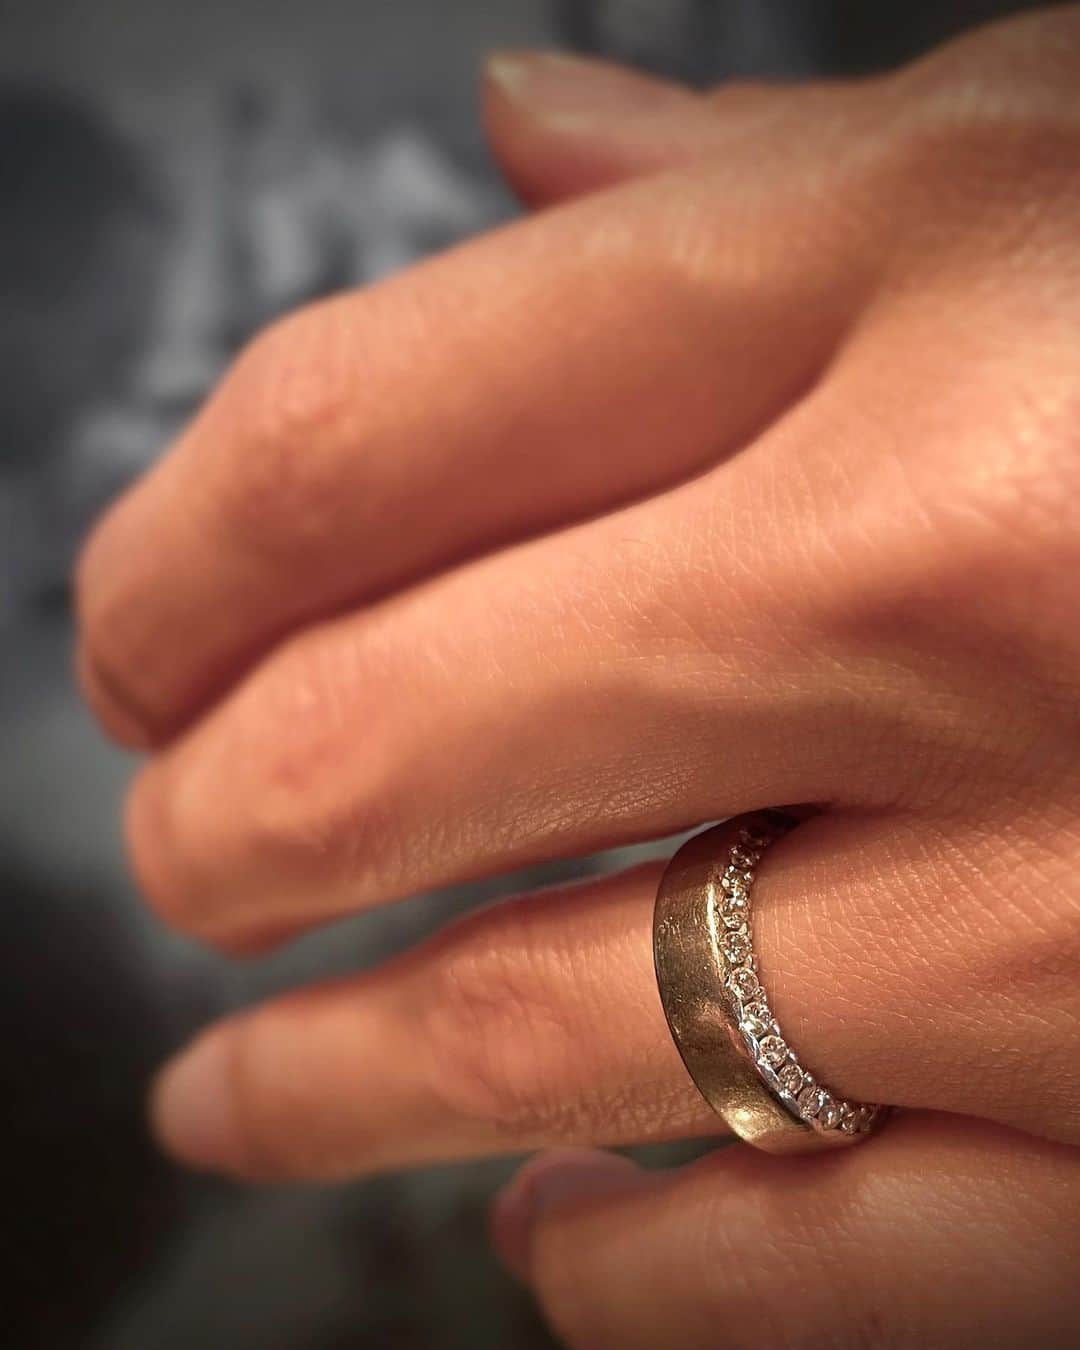 Danke schön ダンケ 金沢 結婚指輪 鍛造さんのインスタグラム写真 - (Danke schön ダンケ 金沢 結婚指輪 鍛造Instagram)「・ ・ 平日ならではの特権😎 出会って13年 久しぶり3年ぶりの再会🙌🏻 ・ ・ 娘ちゃんも出産し 「見て〜この……」と ・ ・ 子育てトークかと 思いきや指輪トーク ・ ・ この日焼けの跡を 見る度に嬉しくなる。と ・ ・ 指輪見て🙌🏻こんな感じになったのよ😍 やっぱり「コレを選んで良かったし 「まさかあの当時の自分がコレを…選んでいた自分に😍 買ってくれた旦那様にも感謝だわ〜」を皮切りに ・ ・ 13年共に歩んでいる中での思いが溢れ その姿を見ている私も13年前の事も 思い出したりしながら ・ ・ 改めて思う。 やっぱり伝わる人には伝わる。とね！ ・ ・ 全く熱が冷めてない コレぞ！正真正銘 『恋い焦がれ…惚れ込んで射止めた』だわね！ ・ ・ あ〜それにしても 懐かしいモデル…でもこんな風に お客様が射止めていてくれると ・ ・ 今は日本展開がないモデルでも こんな風にお客様と再会と共に 指輪とも再会出来ちゃうから ・ ・ 役得だわ〜🥰 ・ ・ 本当に良い感じに育ってきてる。 やっぱりバウアー10年しっかり使い込むと Danke用語で言う『化けるわ〜』と語り合いながらの 楽しい時間が過ぎていく ・ ・ さぁ！時間😉 息子君のお迎えタイムリミット ・ ・ 車に乗り込んだら もう母の顔にチェンジ👍🏻 ・ ・ さぁ！皆さんは どのモデルの10年後の『化けた』姿に 出会ってみたいですか？ ・ ・ 想像したらワクワクする モデルはどれですか？ ・ ・ でもちゃんと身につけないと どんなに耐久性が…とか つけ心地が…とか言った所で ・ ・ 「鍛造削り出し」の指輪を手にした醍醐味は 身につけない事には味合う事の出来ない『経年変化』 ちゃ〜んと満喫してくださいね🙌🏻 ・ ・ ※ちゃんと身につける コレは鉄則🤝ですよ😁 ・ ・ ・ ・ ・  【鍛造削り出し】 🇩🇪クリスチャンバウアー 専門店 ・ ・ ワンランク上をいくノウハウの クリスチャンバウアーの選び方なら 『Danke schön 』 ・ ・ ・ —— 𝐃𝐚𝐧𝐤𝐞——— ▪︎ Instagramプロフィール 🔜 @danke2005  —————————————————————𝐒𝐜𝐡⍥𝐧——— ・ ・ #クリスチャンバウアー金沢 #鍛造指輪 #鍛造リング #結婚指輪 #結婚指輪オーダー #切削加工 #結婚指輪探し #結婚指輪選び #指輪探し #指輪選び #マリッジリング #結婚指輪金沢 #金沢結婚指輪 #セカンドリング #結婚指輪買い替え #地金屋鍛造 #ブライダルリング #結婚記念日 #ベビーリング #ドイツリング #自分へのご褒美 #ダイヤバングル  #バングル #バングルコーデ #ダイヤモンドバングル   ------------------------------------------✈︎ ---------  鍛造削り出し 🇩🇪クリスチャンバウアー 専門店 『𝐃𝐚𝐧𝐤𝐞 𝐬𝐜𝐡⍥𝐧』 ・ • 営業時間 am11:00〜pm9:00 • 定休日 : 木曜日 • 駐車場 : 店舗前OK • ご予約 : 優先 ・ ・ ——𝐃𝐚𝐧𝐤𝐞——————————————— ▪︎トップページ 🔜 @danke2005 ———————————————————-𝐒𝐜𝐡⍥𝐧—————」5月13日 9時52分 - danke2005